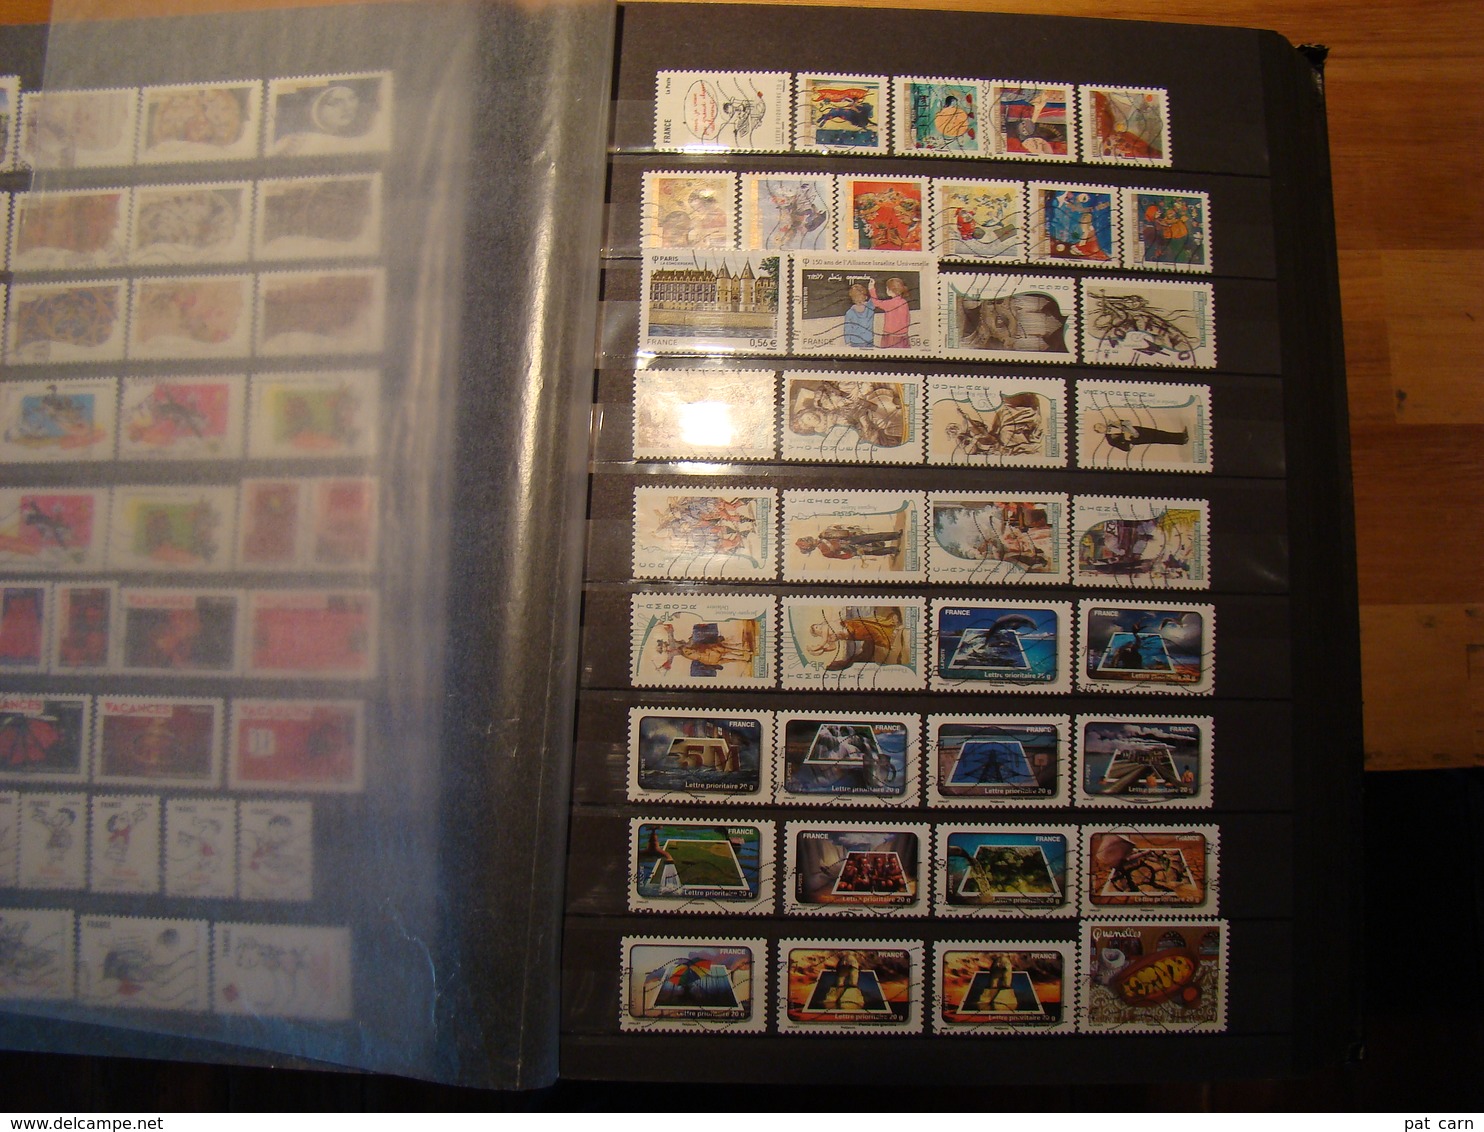 En classeur de 64 pages, stock de plus de 2300 timbres de France années 2000, la plupart en bon état, à voir